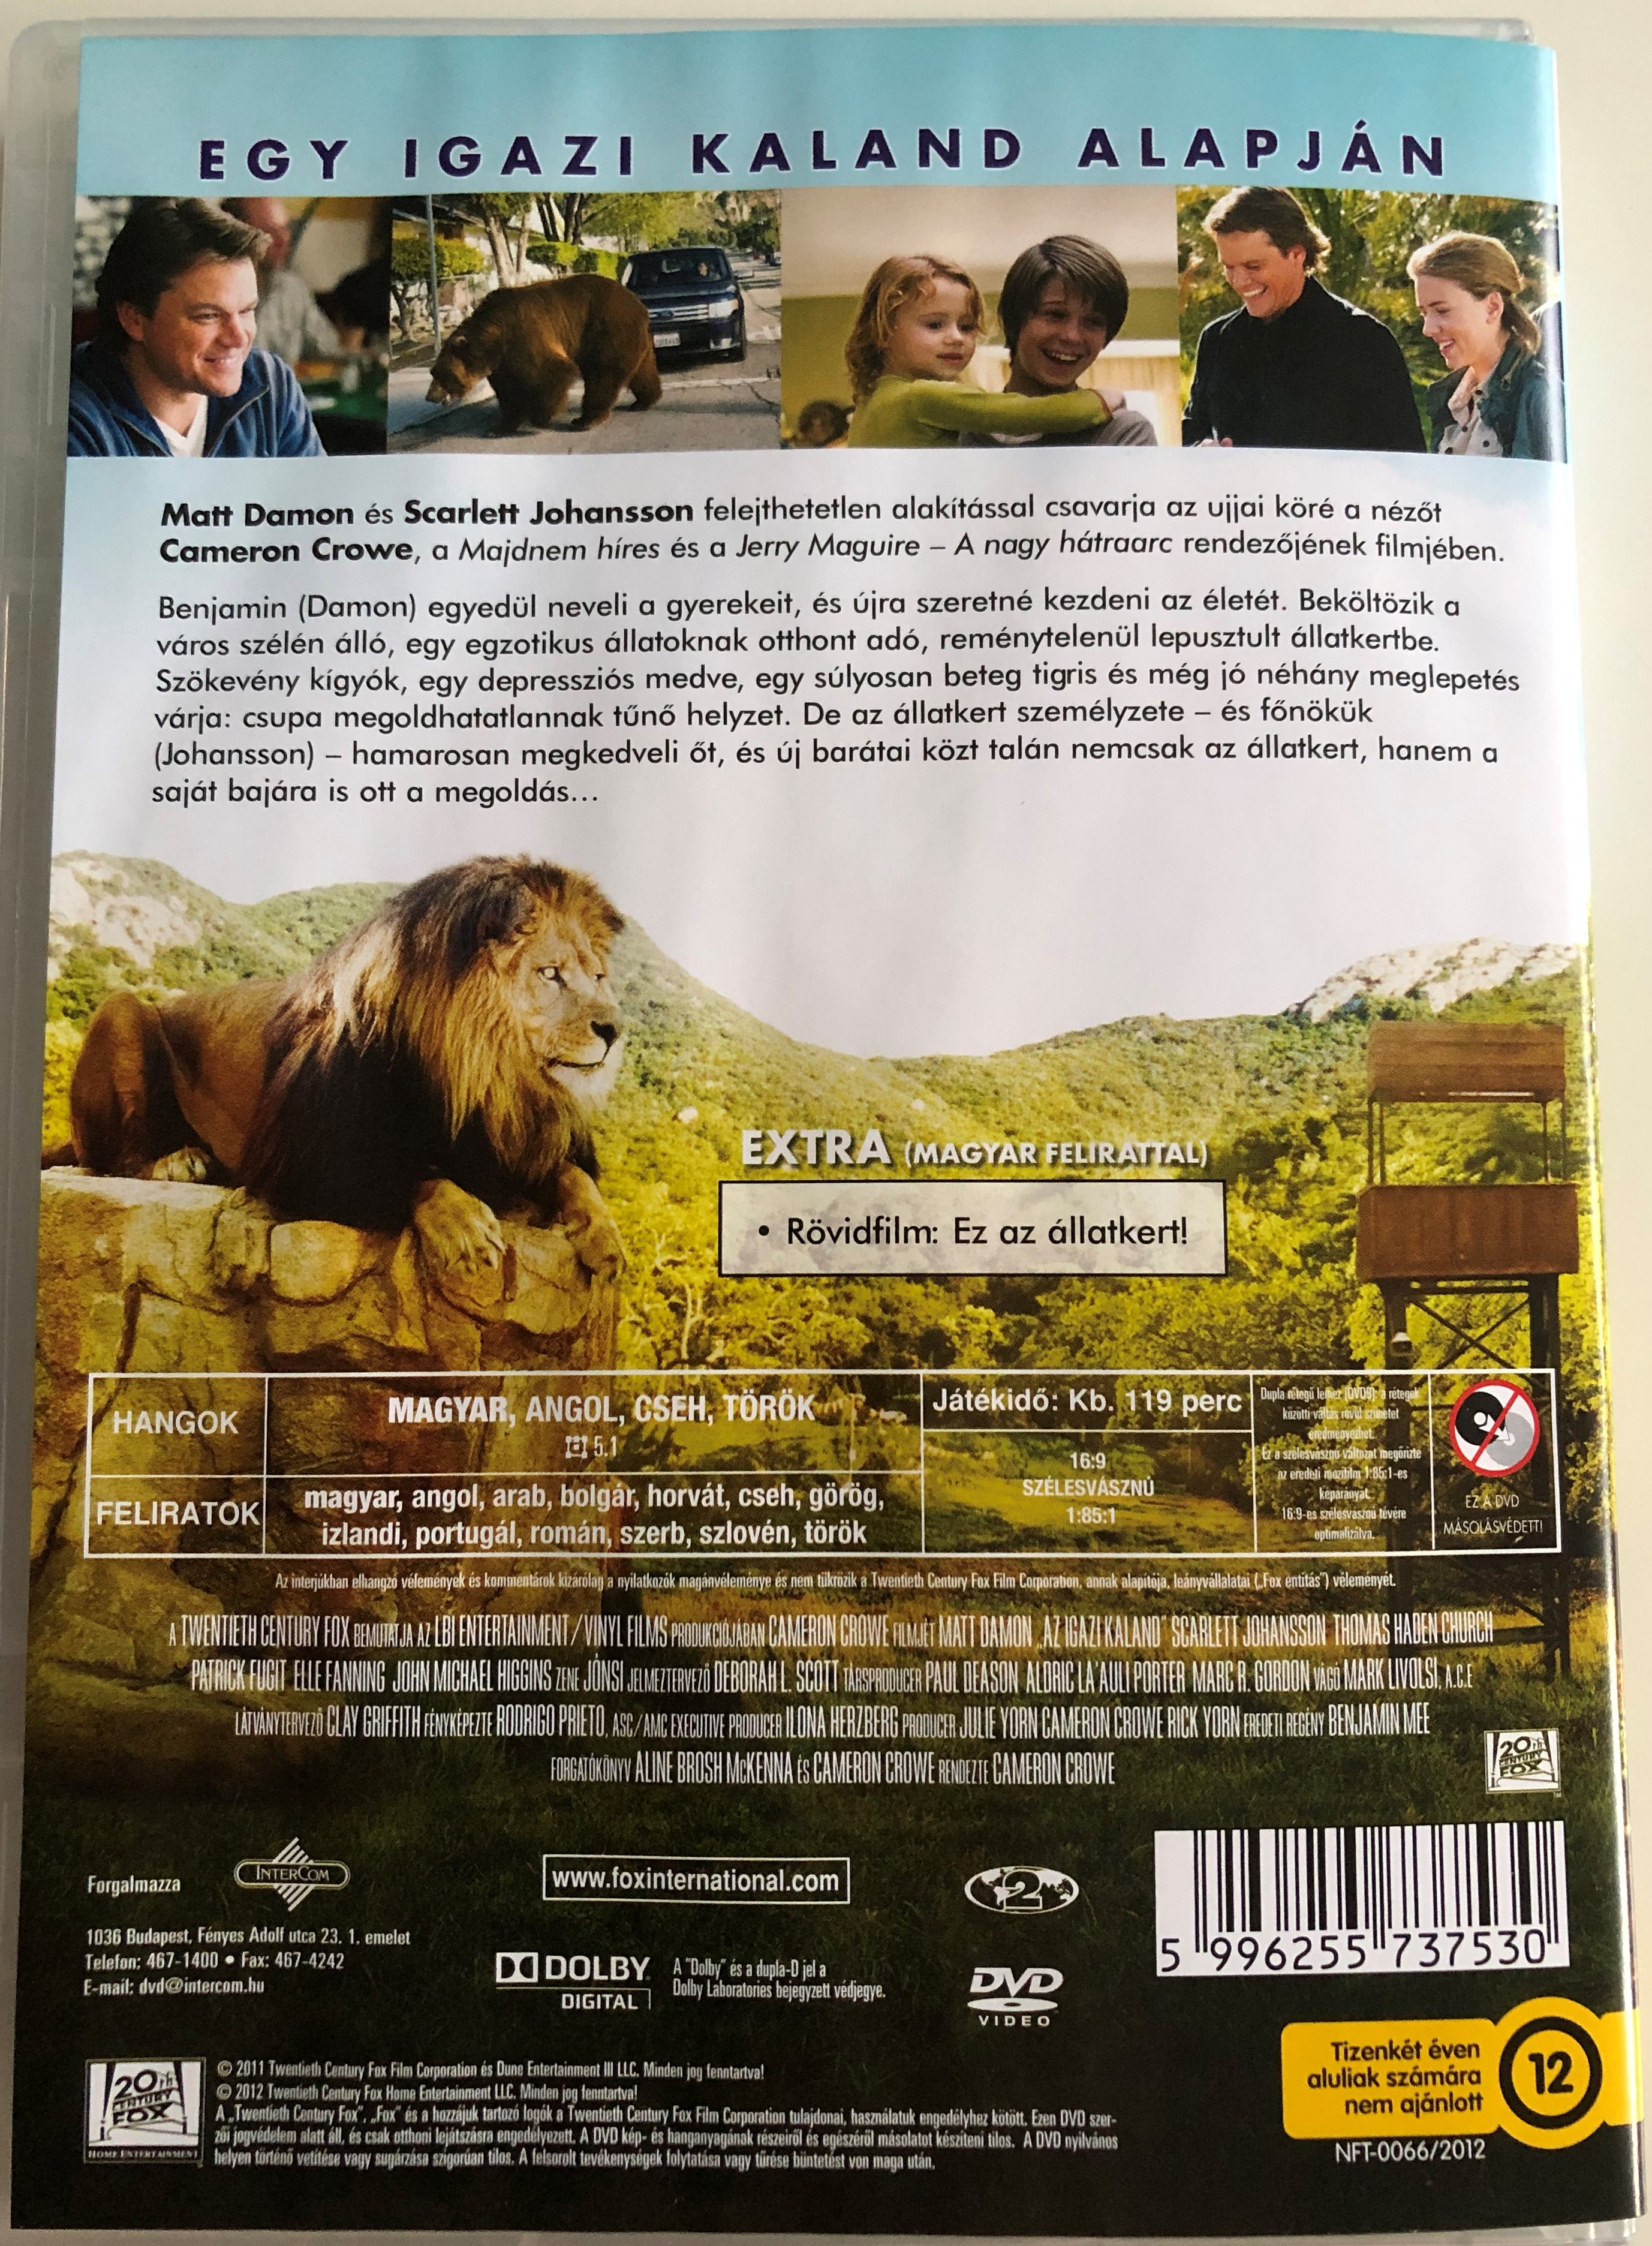 We bought a Zoo DVD 2011 Az igazi Kaland 1